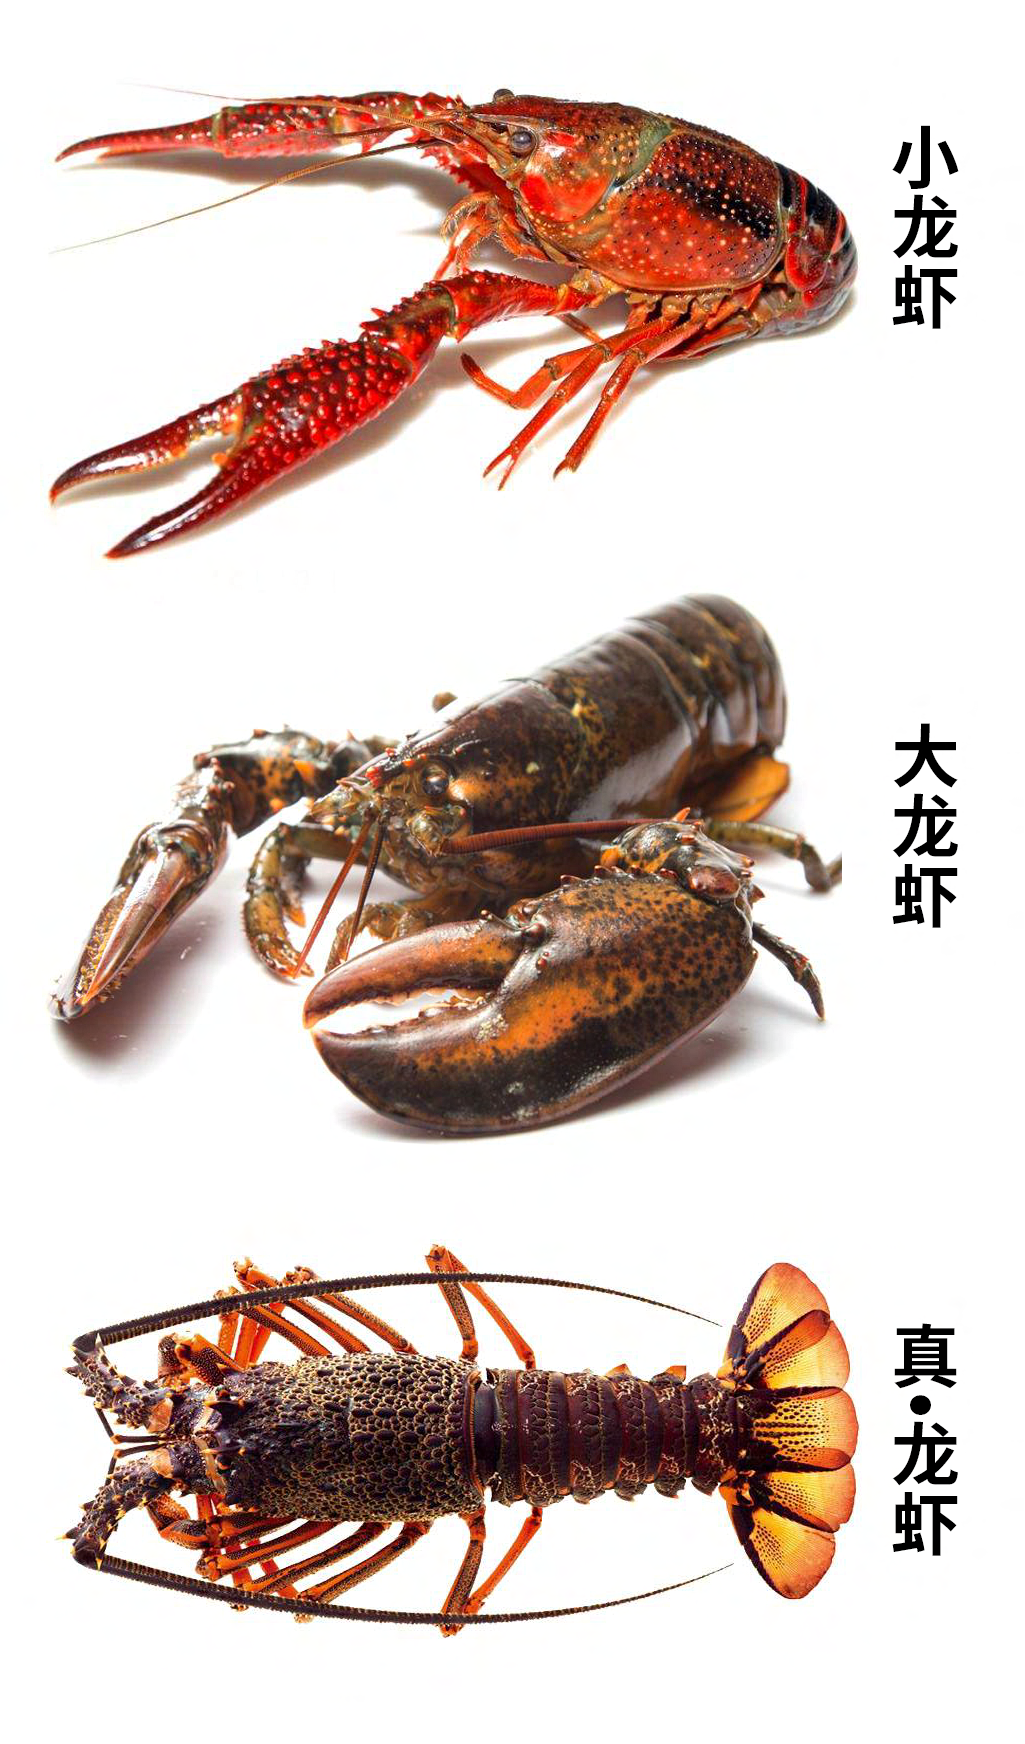 大龙虾去除腮胃图解,怎么清理龙虾胃囊图,大龙虾哪里不能吃(第2页)_大山谷图库